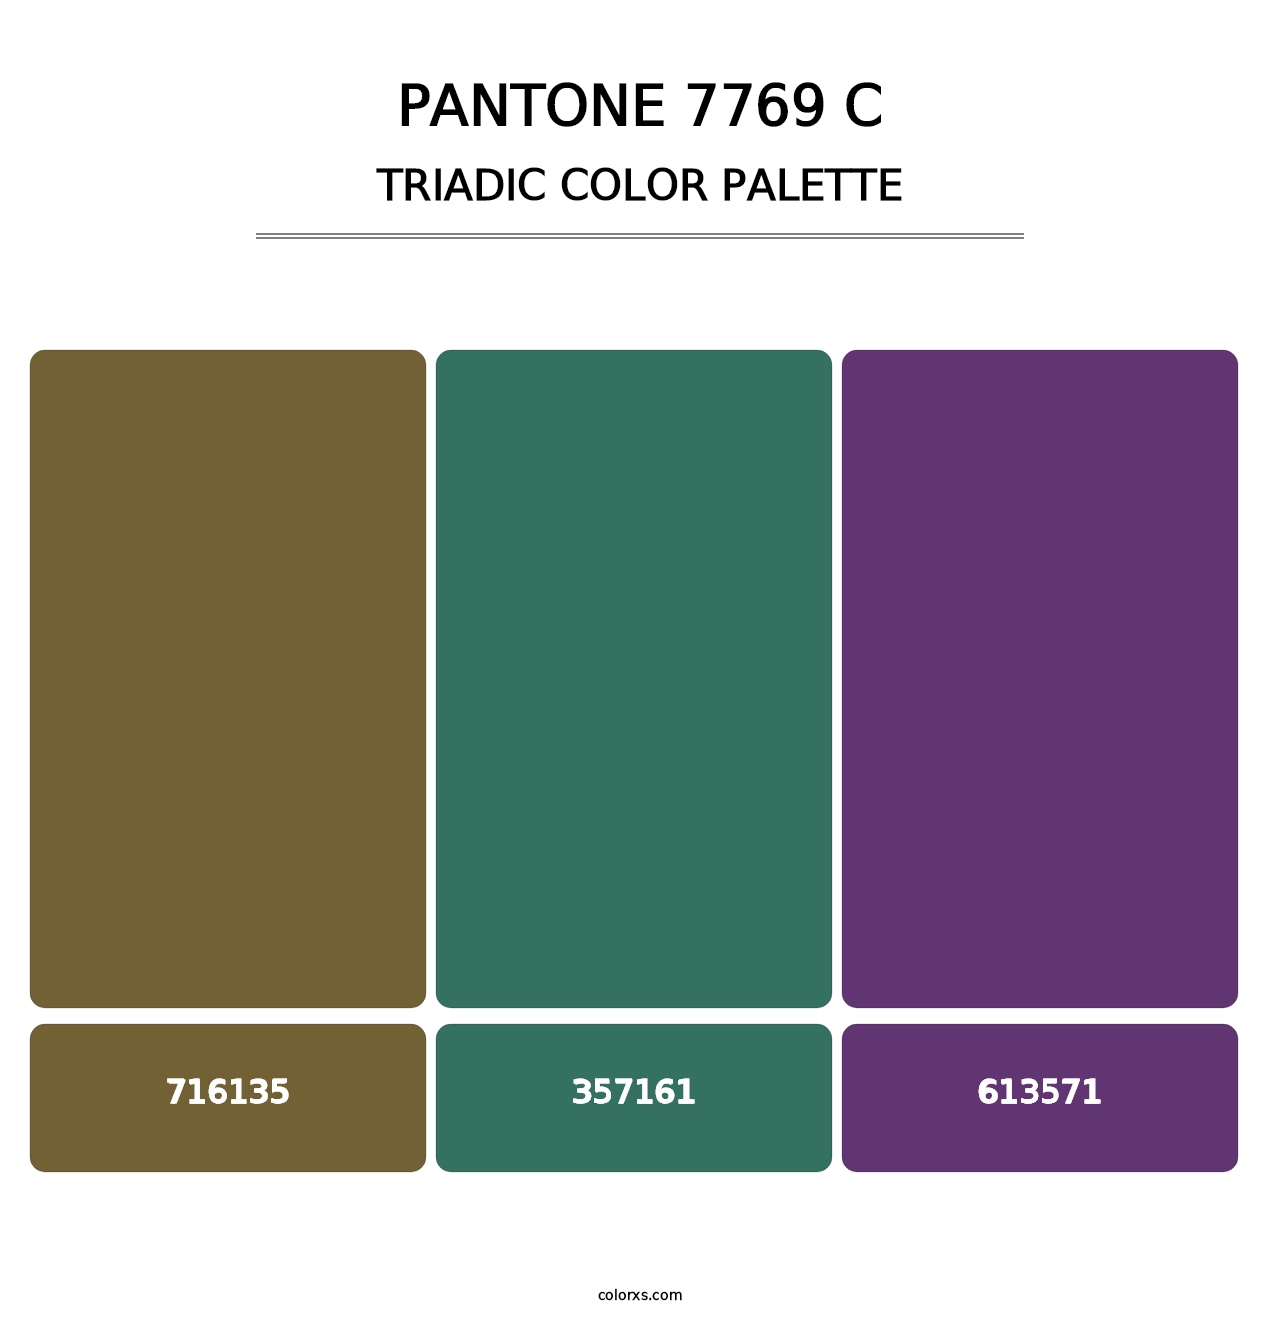 PANTONE 7769 C - Triadic Color Palette